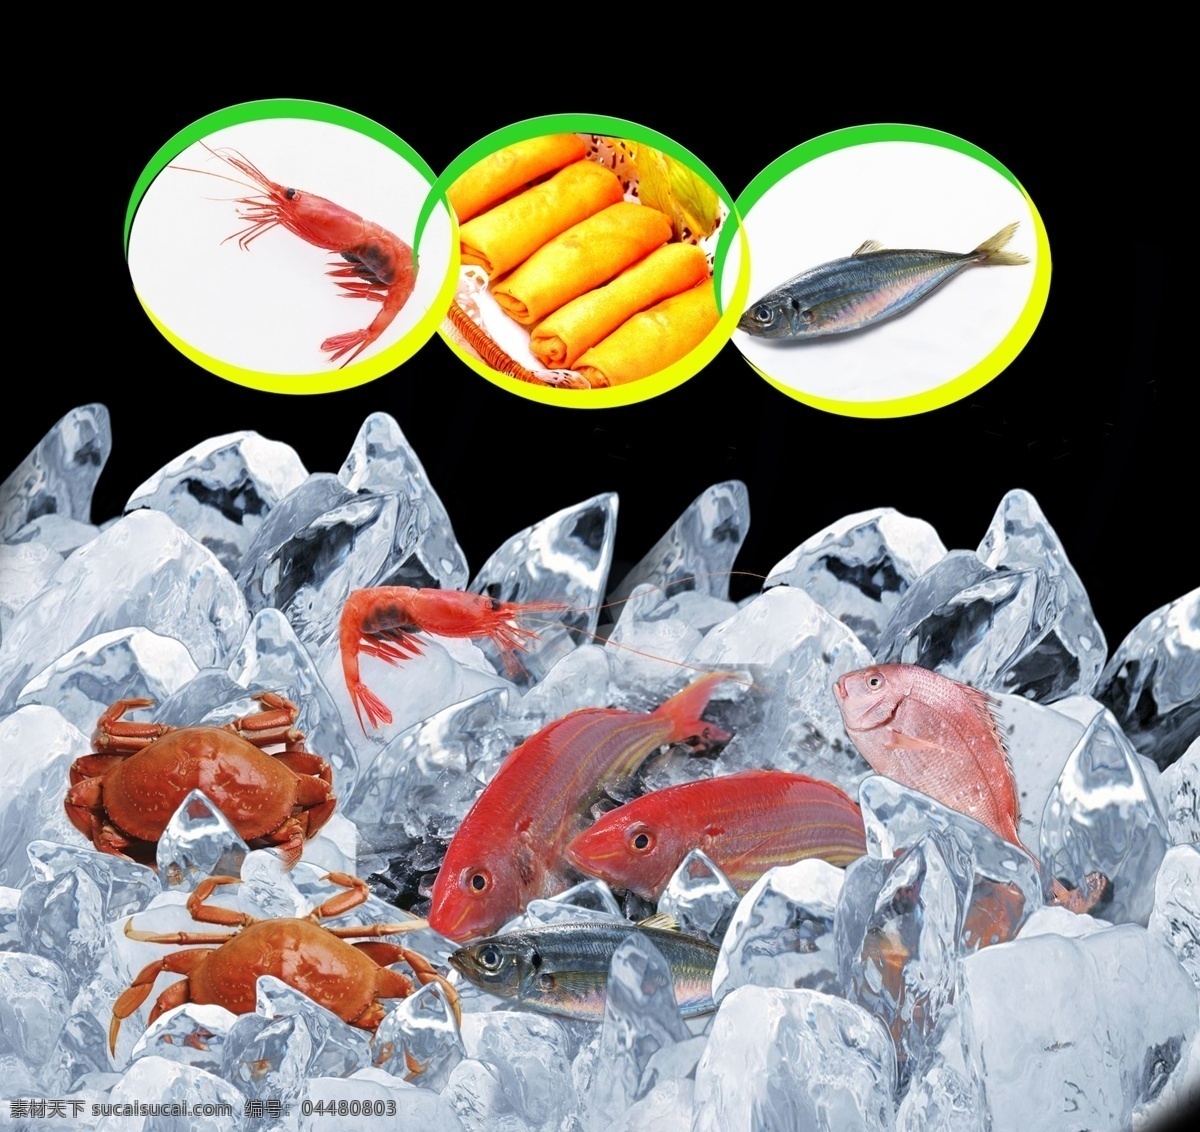 冷冻食品 鱼 冰块 虾 春卷 螃蟹 超市图片 分层 背景素材 源文件库